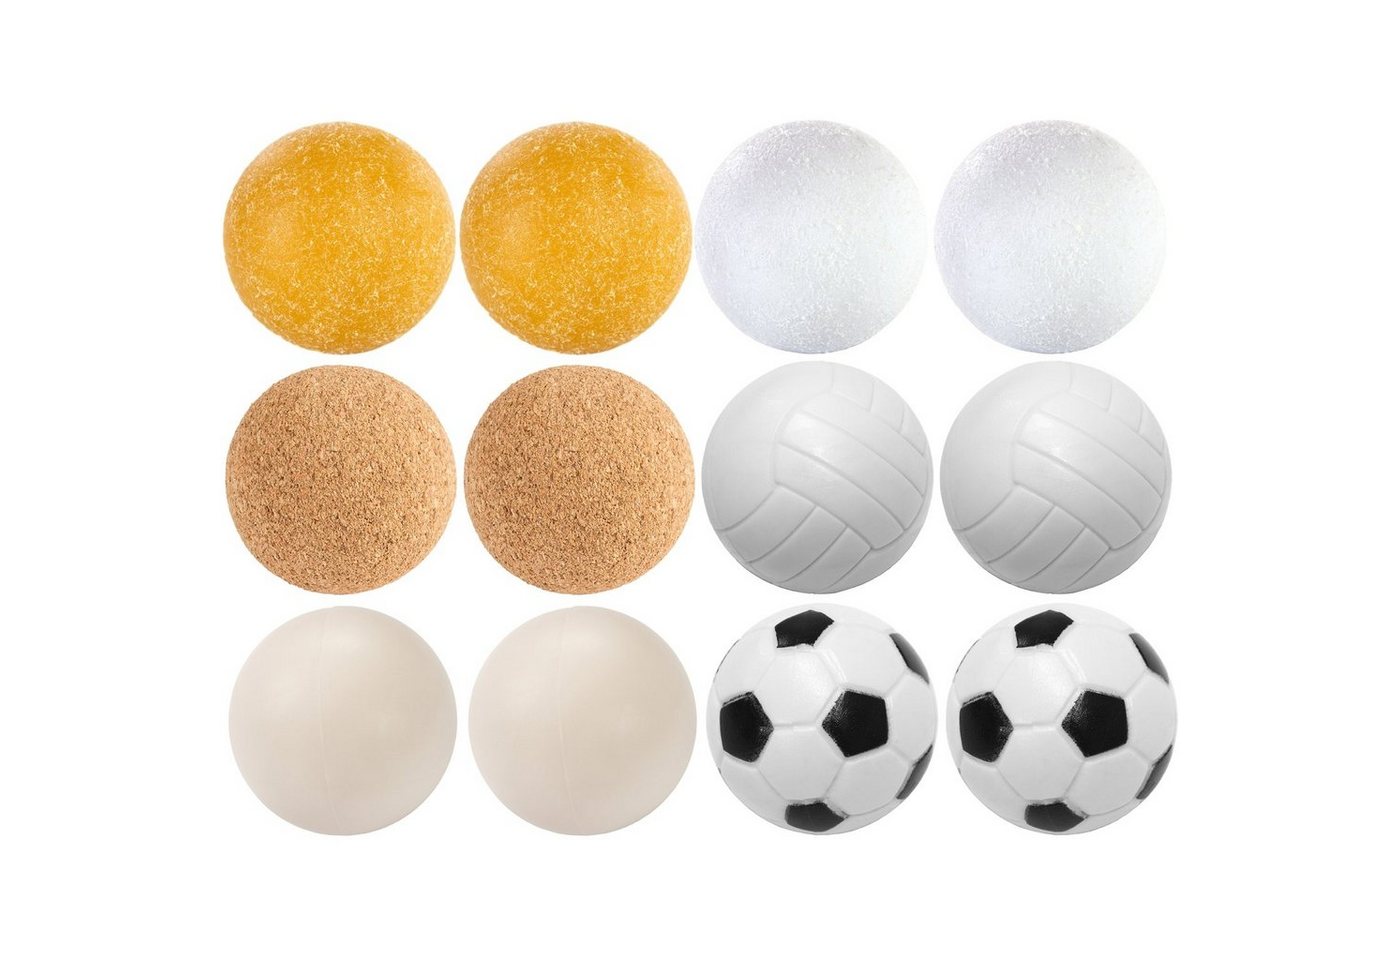 GAMES PLANET Spielball Games Planet Kickerbälle Mischung, 6 oder 12 Stück (Set), 6 unterschiedliche Sorten (Kork, PE,PU, Kunststoff), Durchmesser 35mm, Tischfussball Kickerbälle, Ball von GAMES PLANET